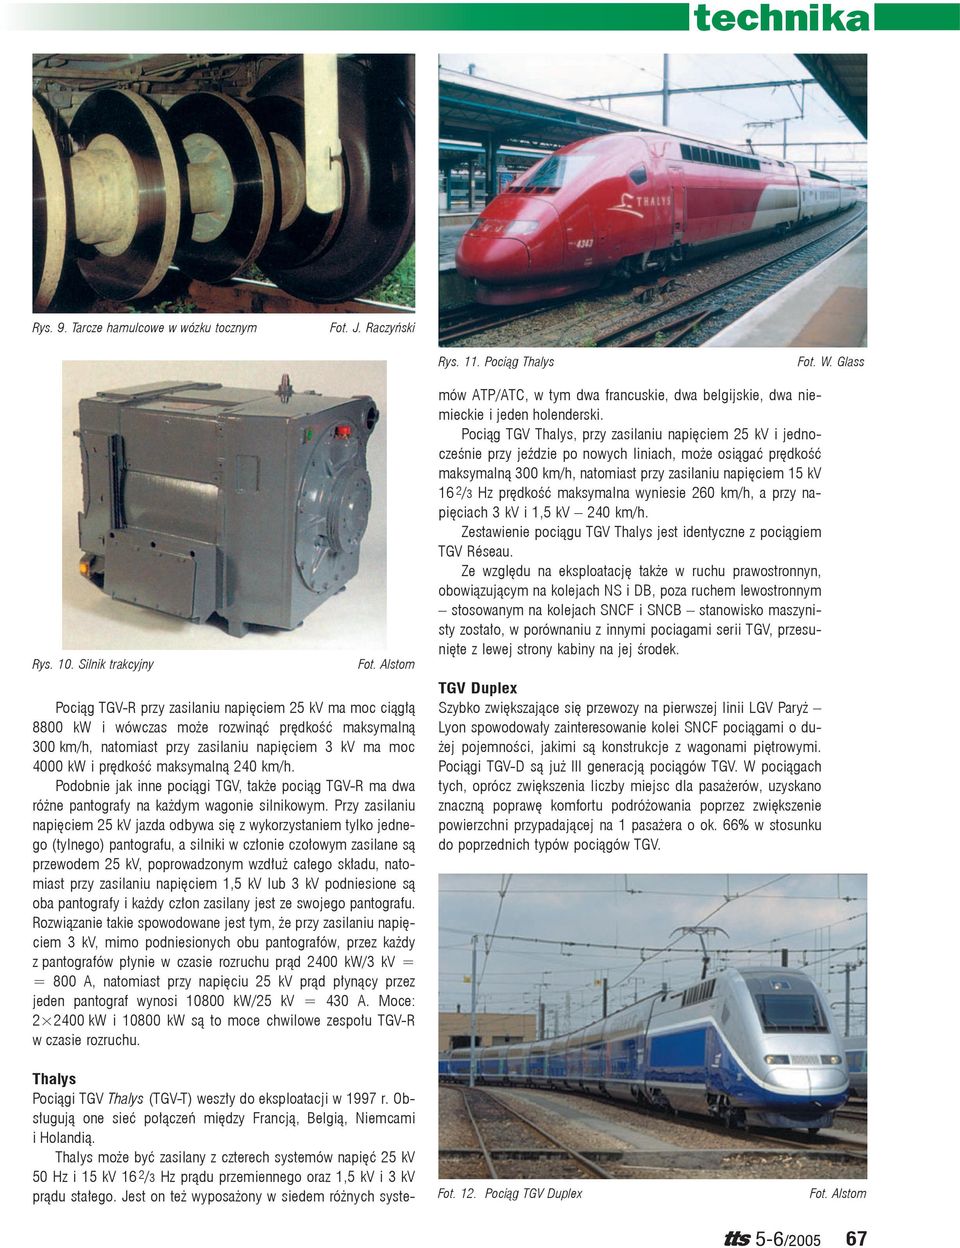 maksymalną 240 km/h. Podobnie jak inne pociągi TGV, także pociąg TGV-R ma dwa różne pantografy na każdym wagonie silnikowym.